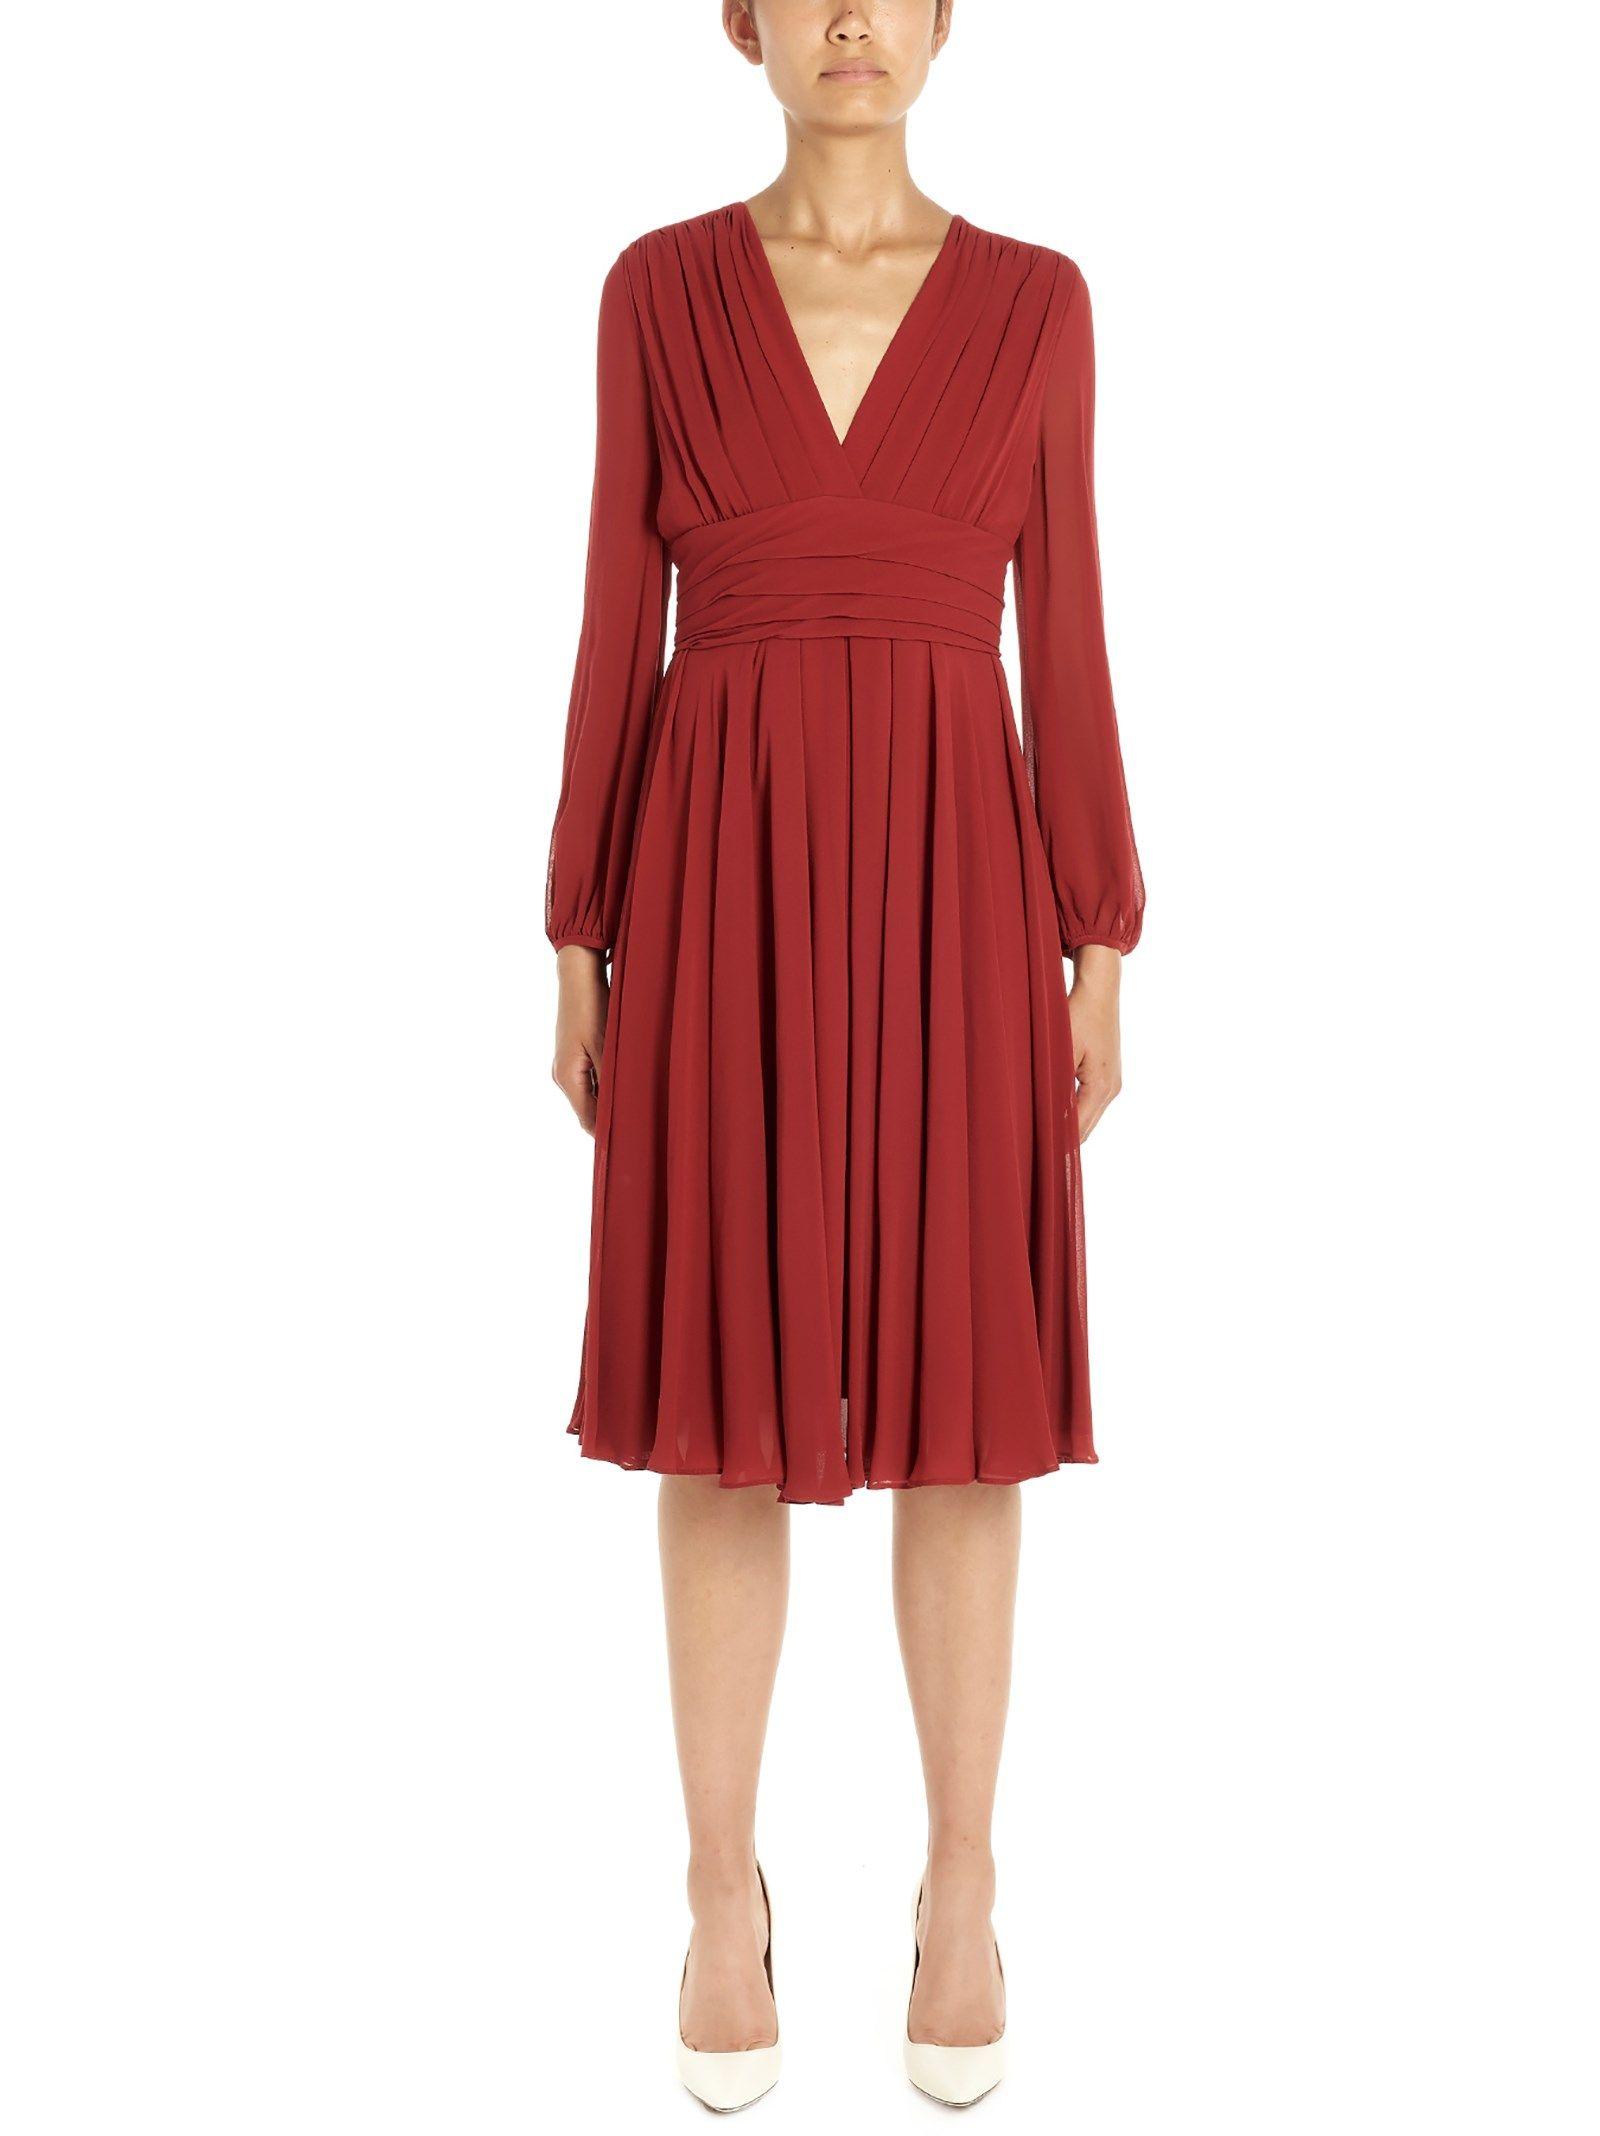 Max Mara Studio Red Silk Dress - Save 40% - Lyst